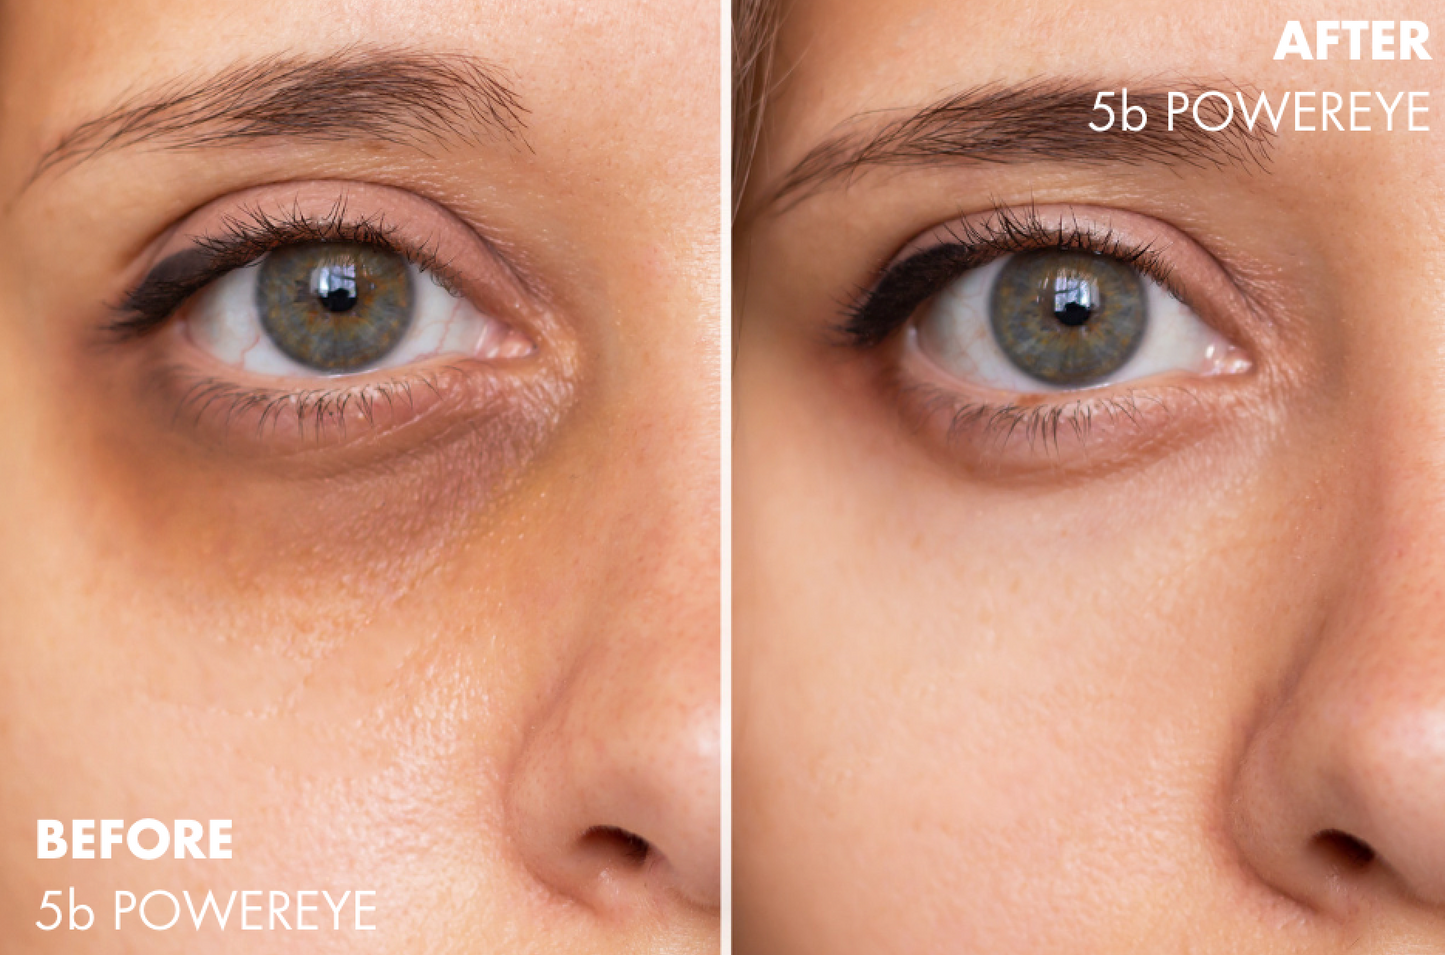 5b POWEREYE multi-benefit eye cream